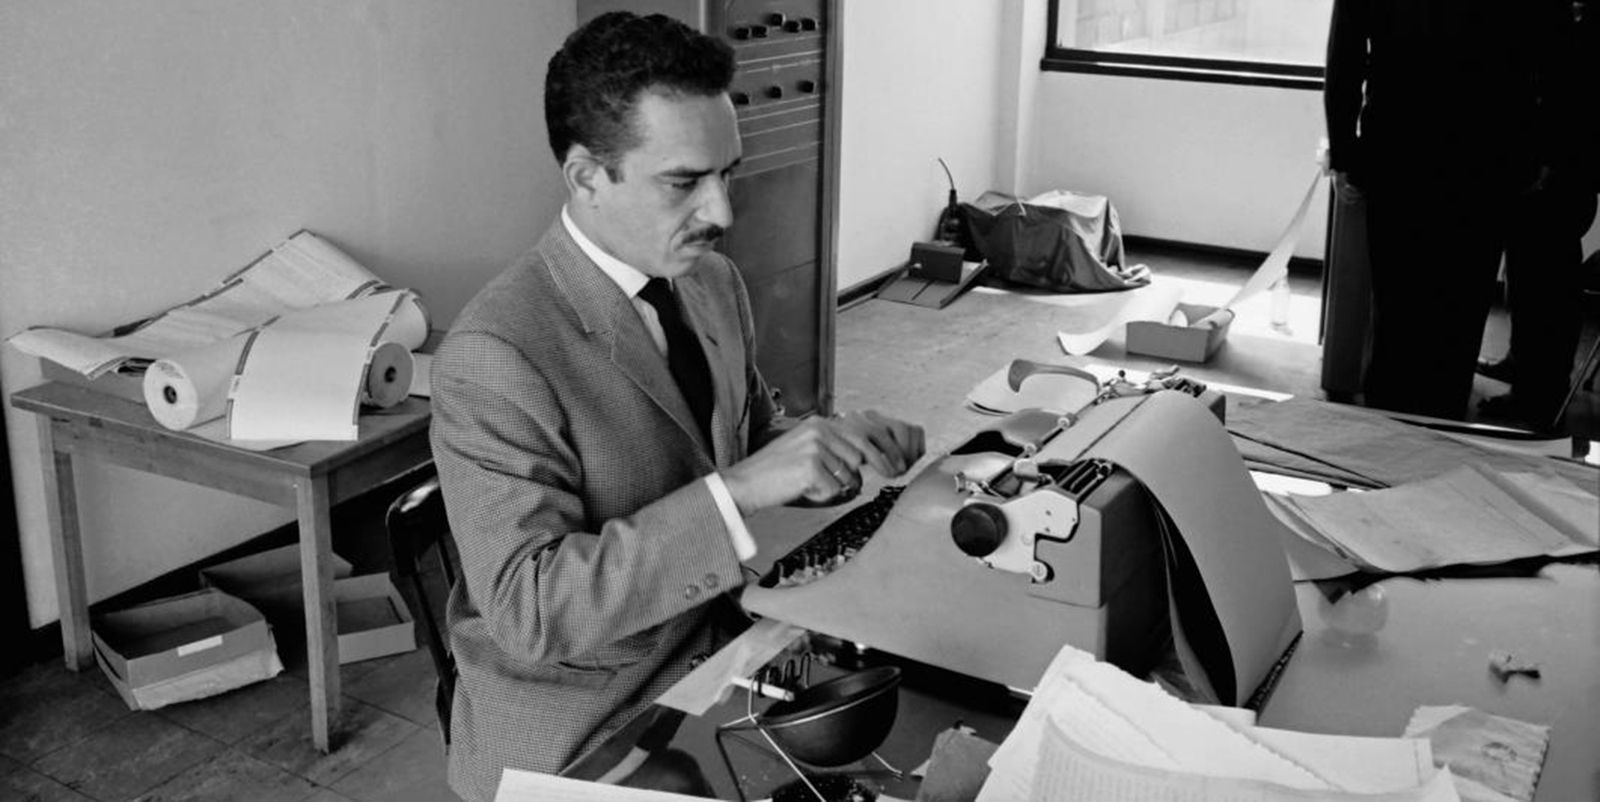 Los últimos días de García Márquez relatados por su hijo: "No reconocía a nadie"